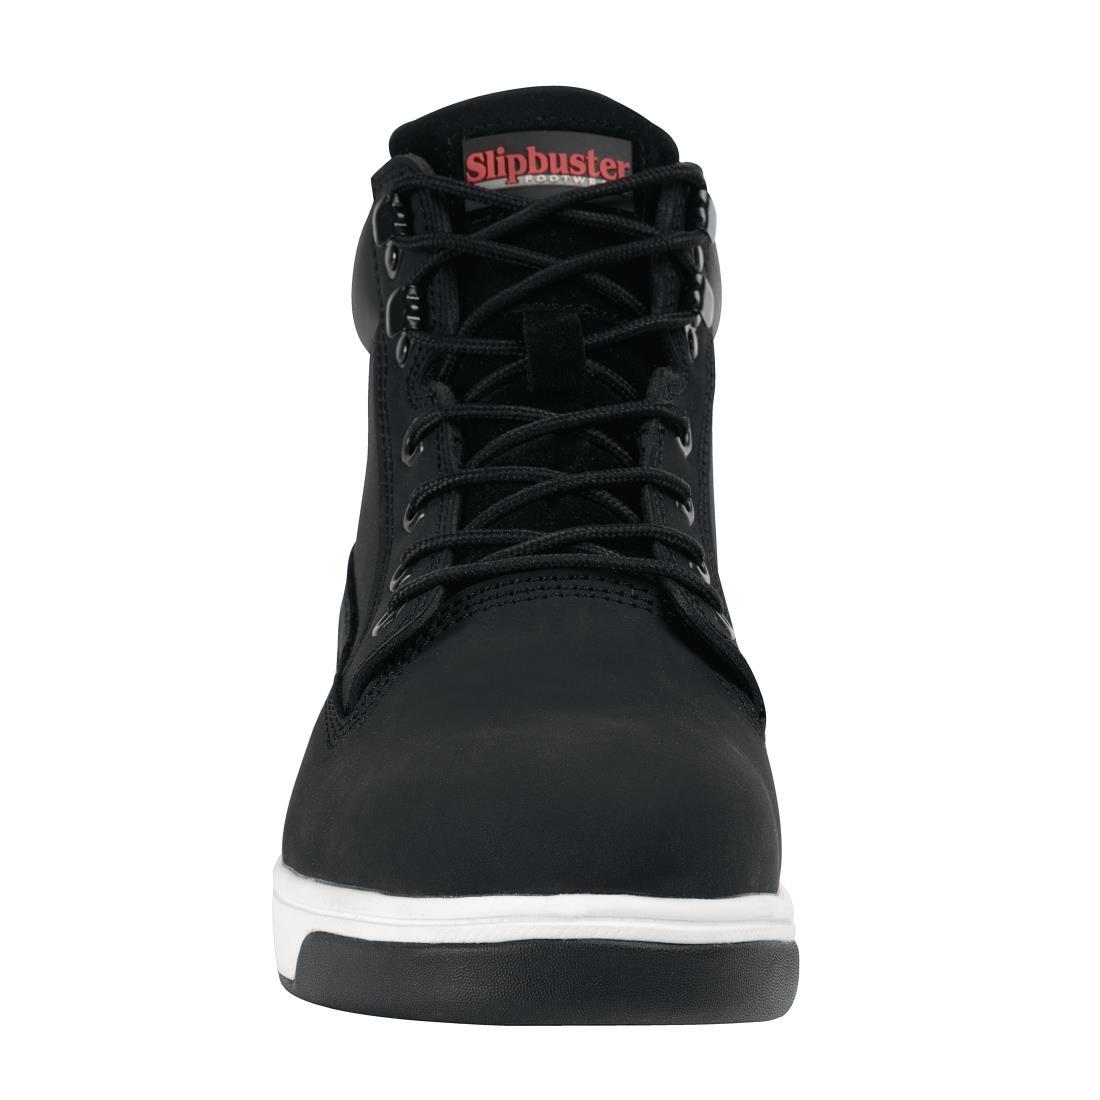 Slipbuster Sneaker Boots Black 38 - BB422-38  - 3